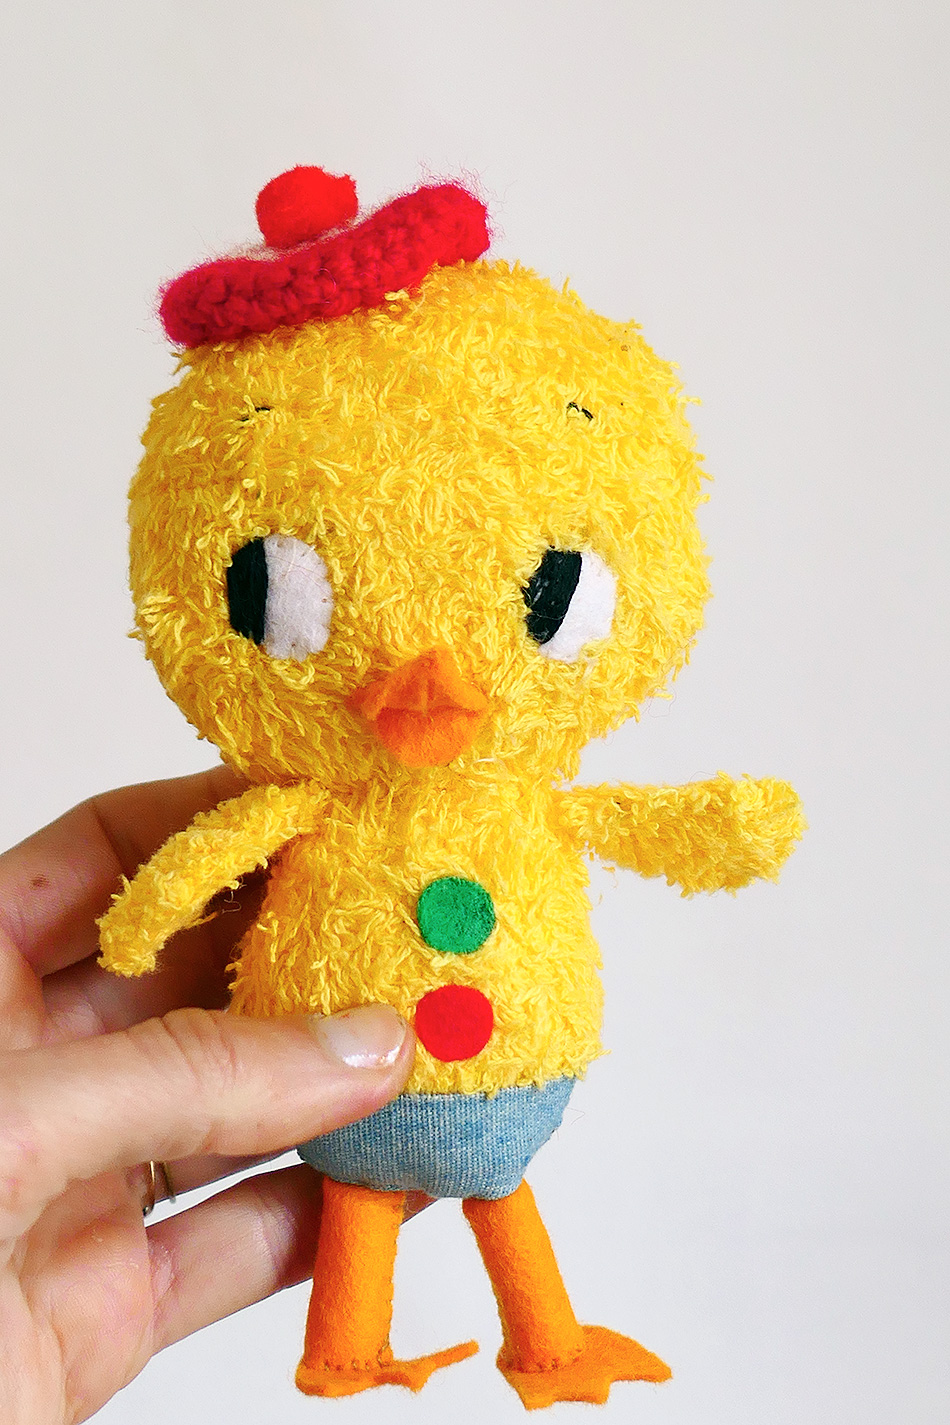 misako mimoko: Easter Chick & Shop Update